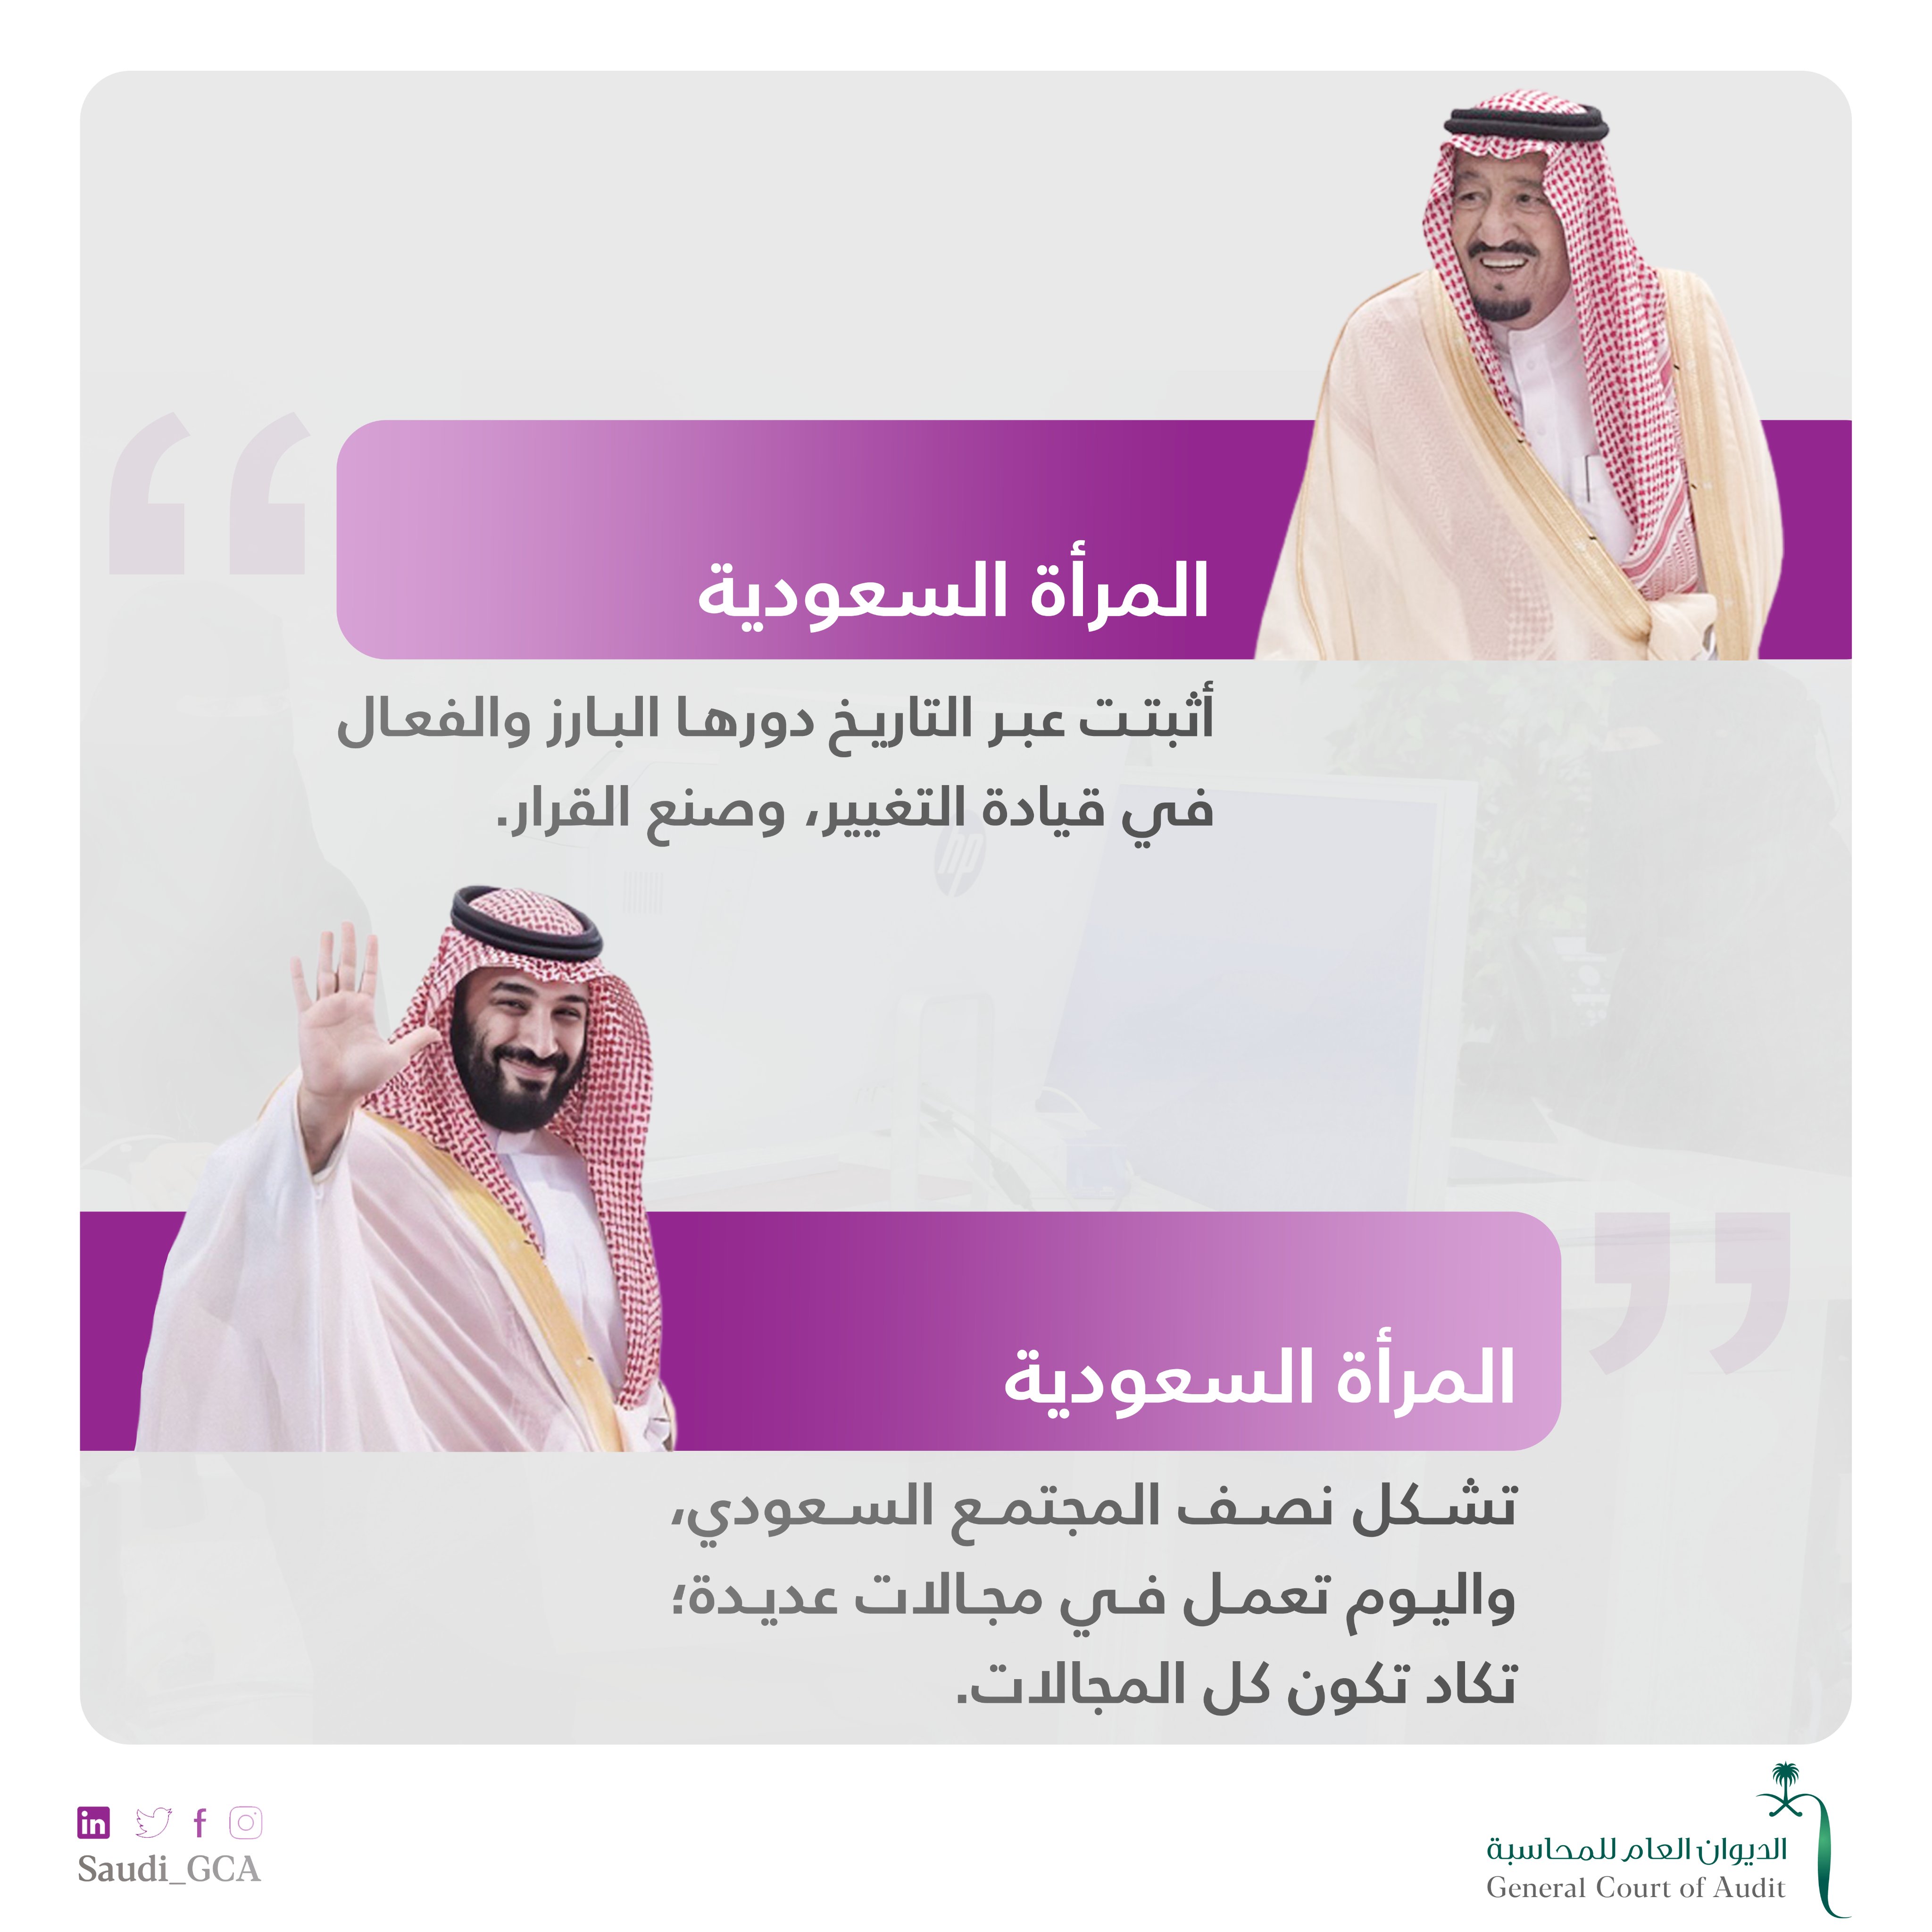 التخصصات المطلوبة في السعودية 2030